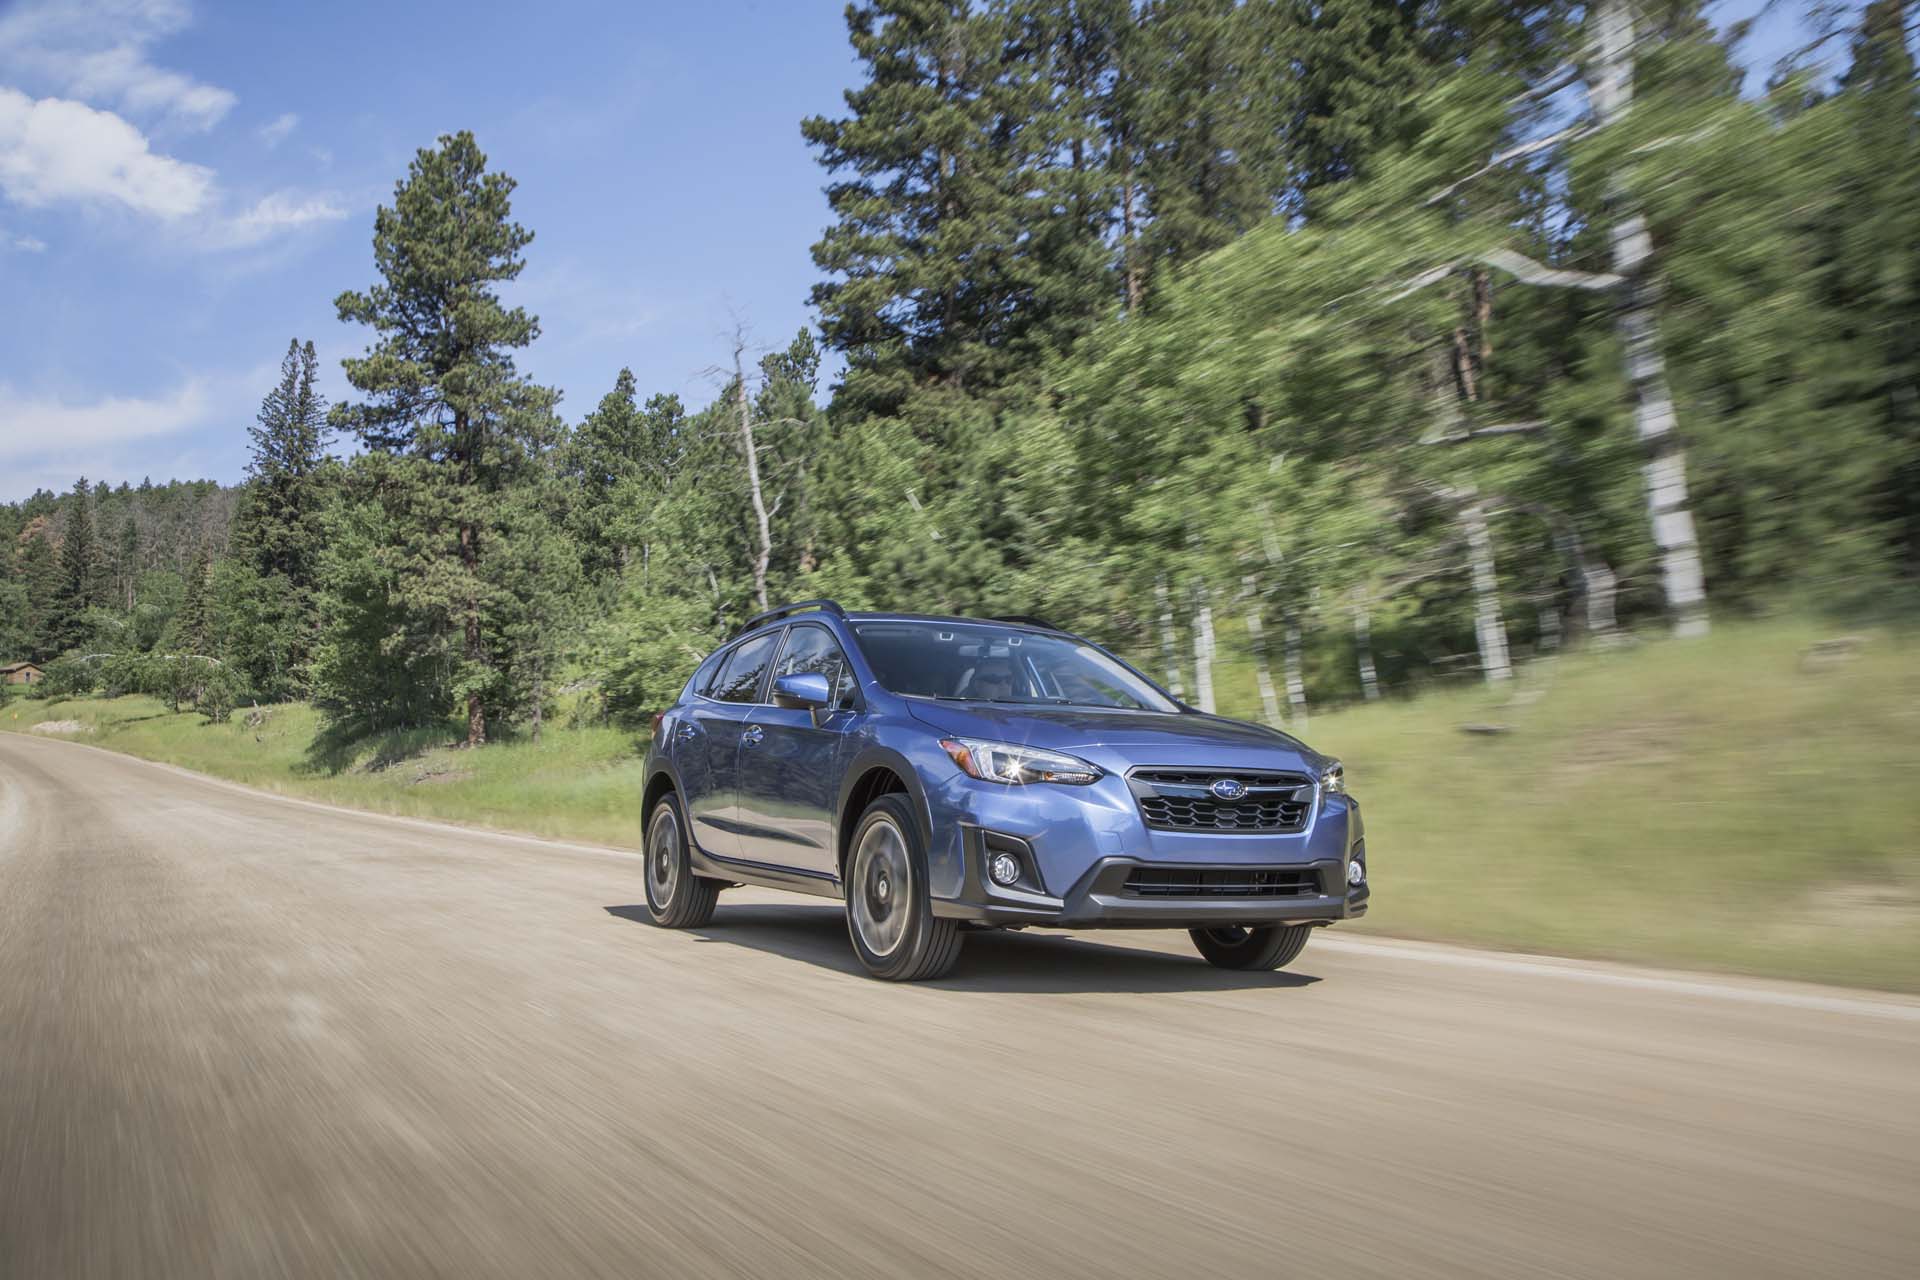 New Subaru Crosstrek plugin hybrid coming for 2019